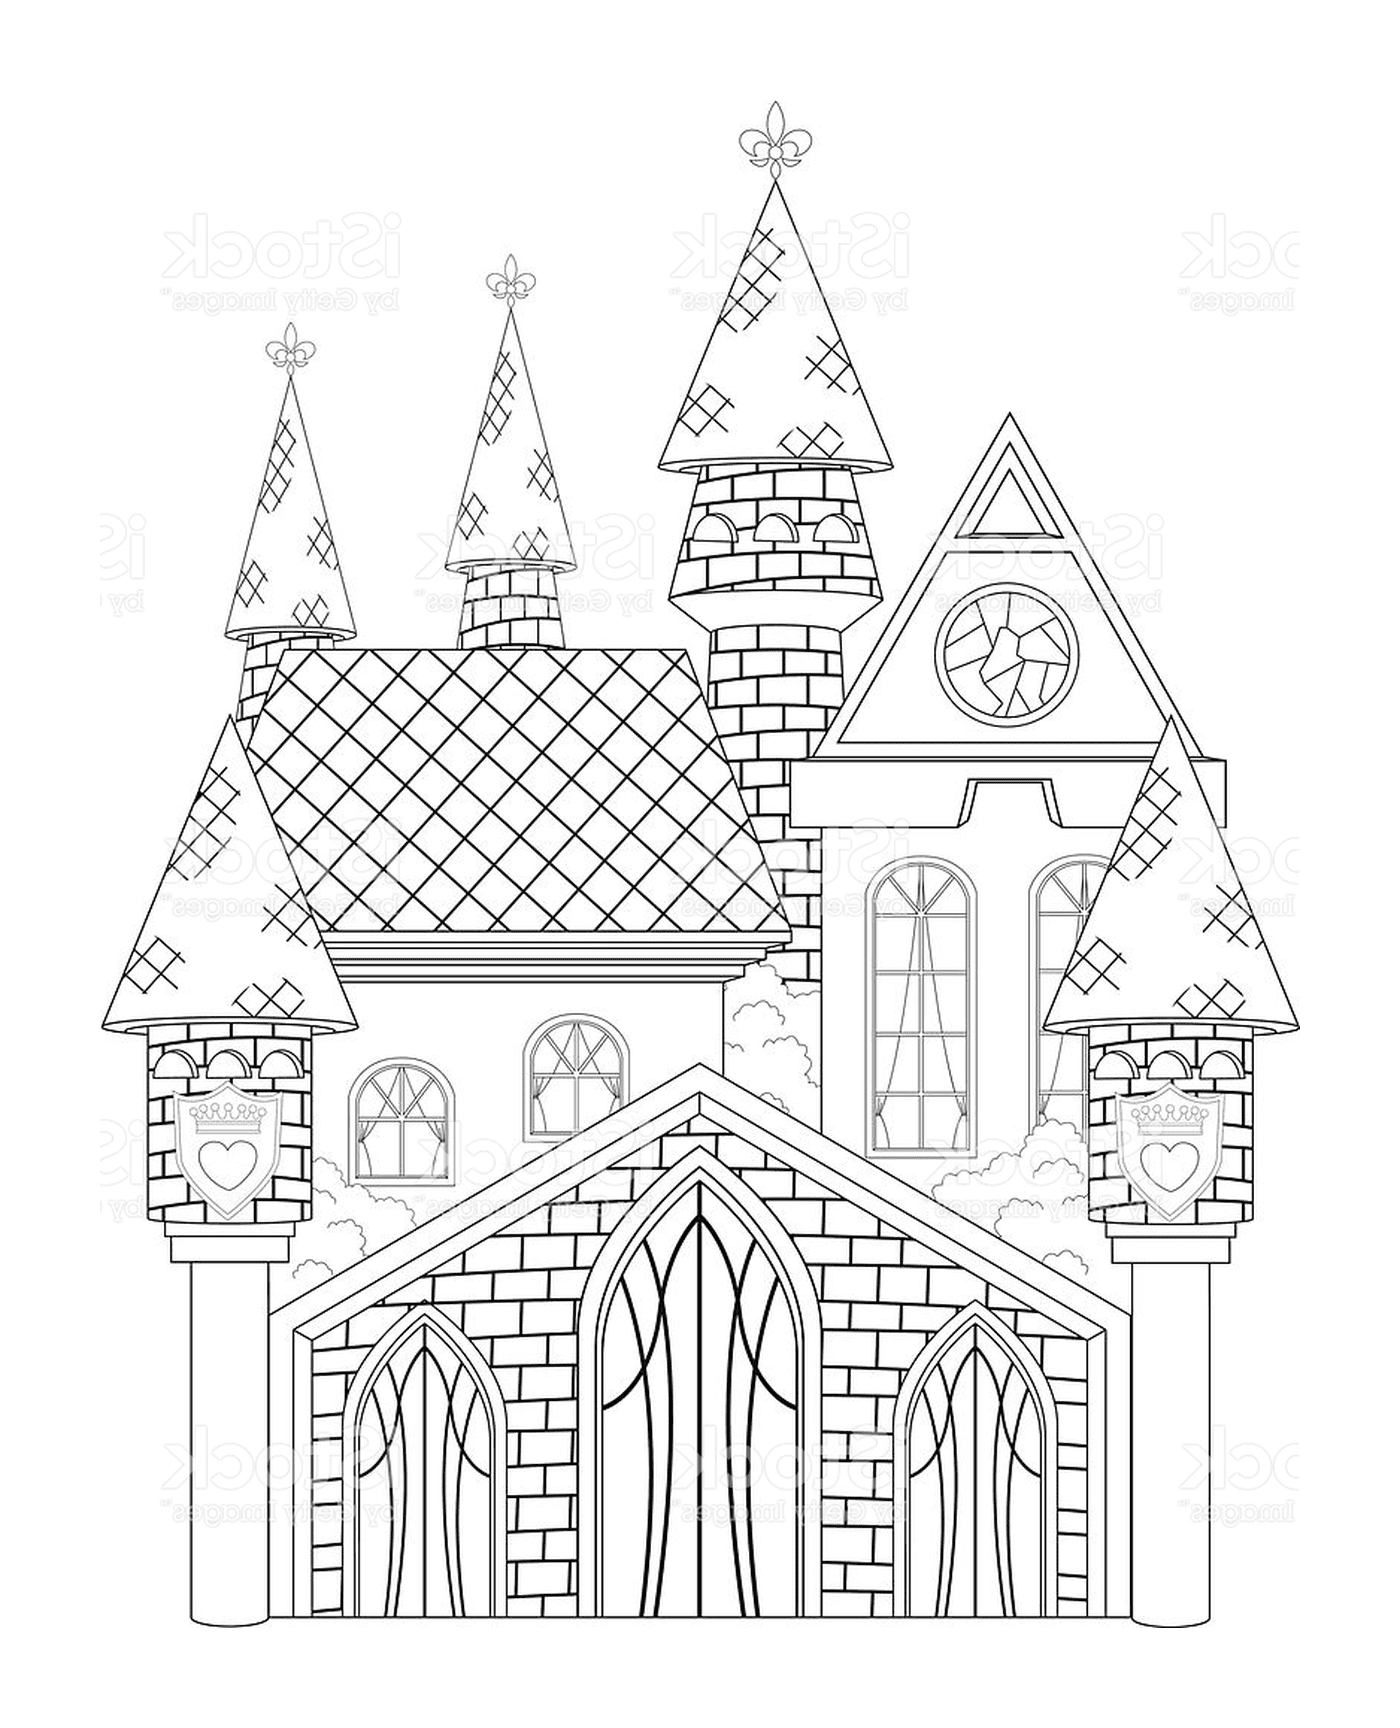   Un château de princesse 